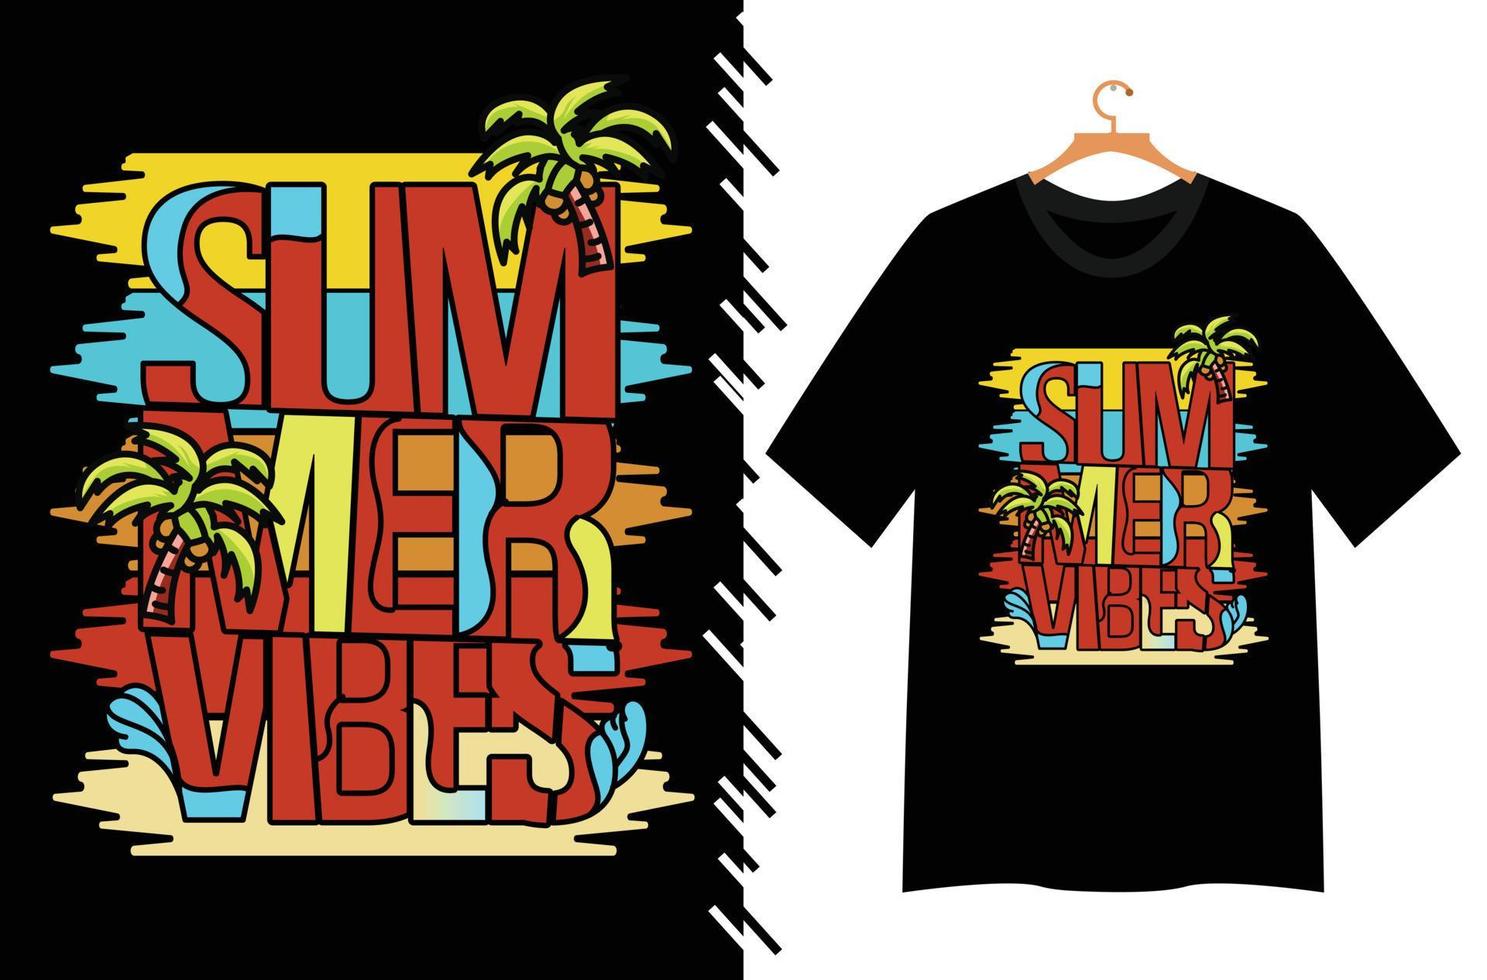 ilustração de verão para design de camiseta vetor